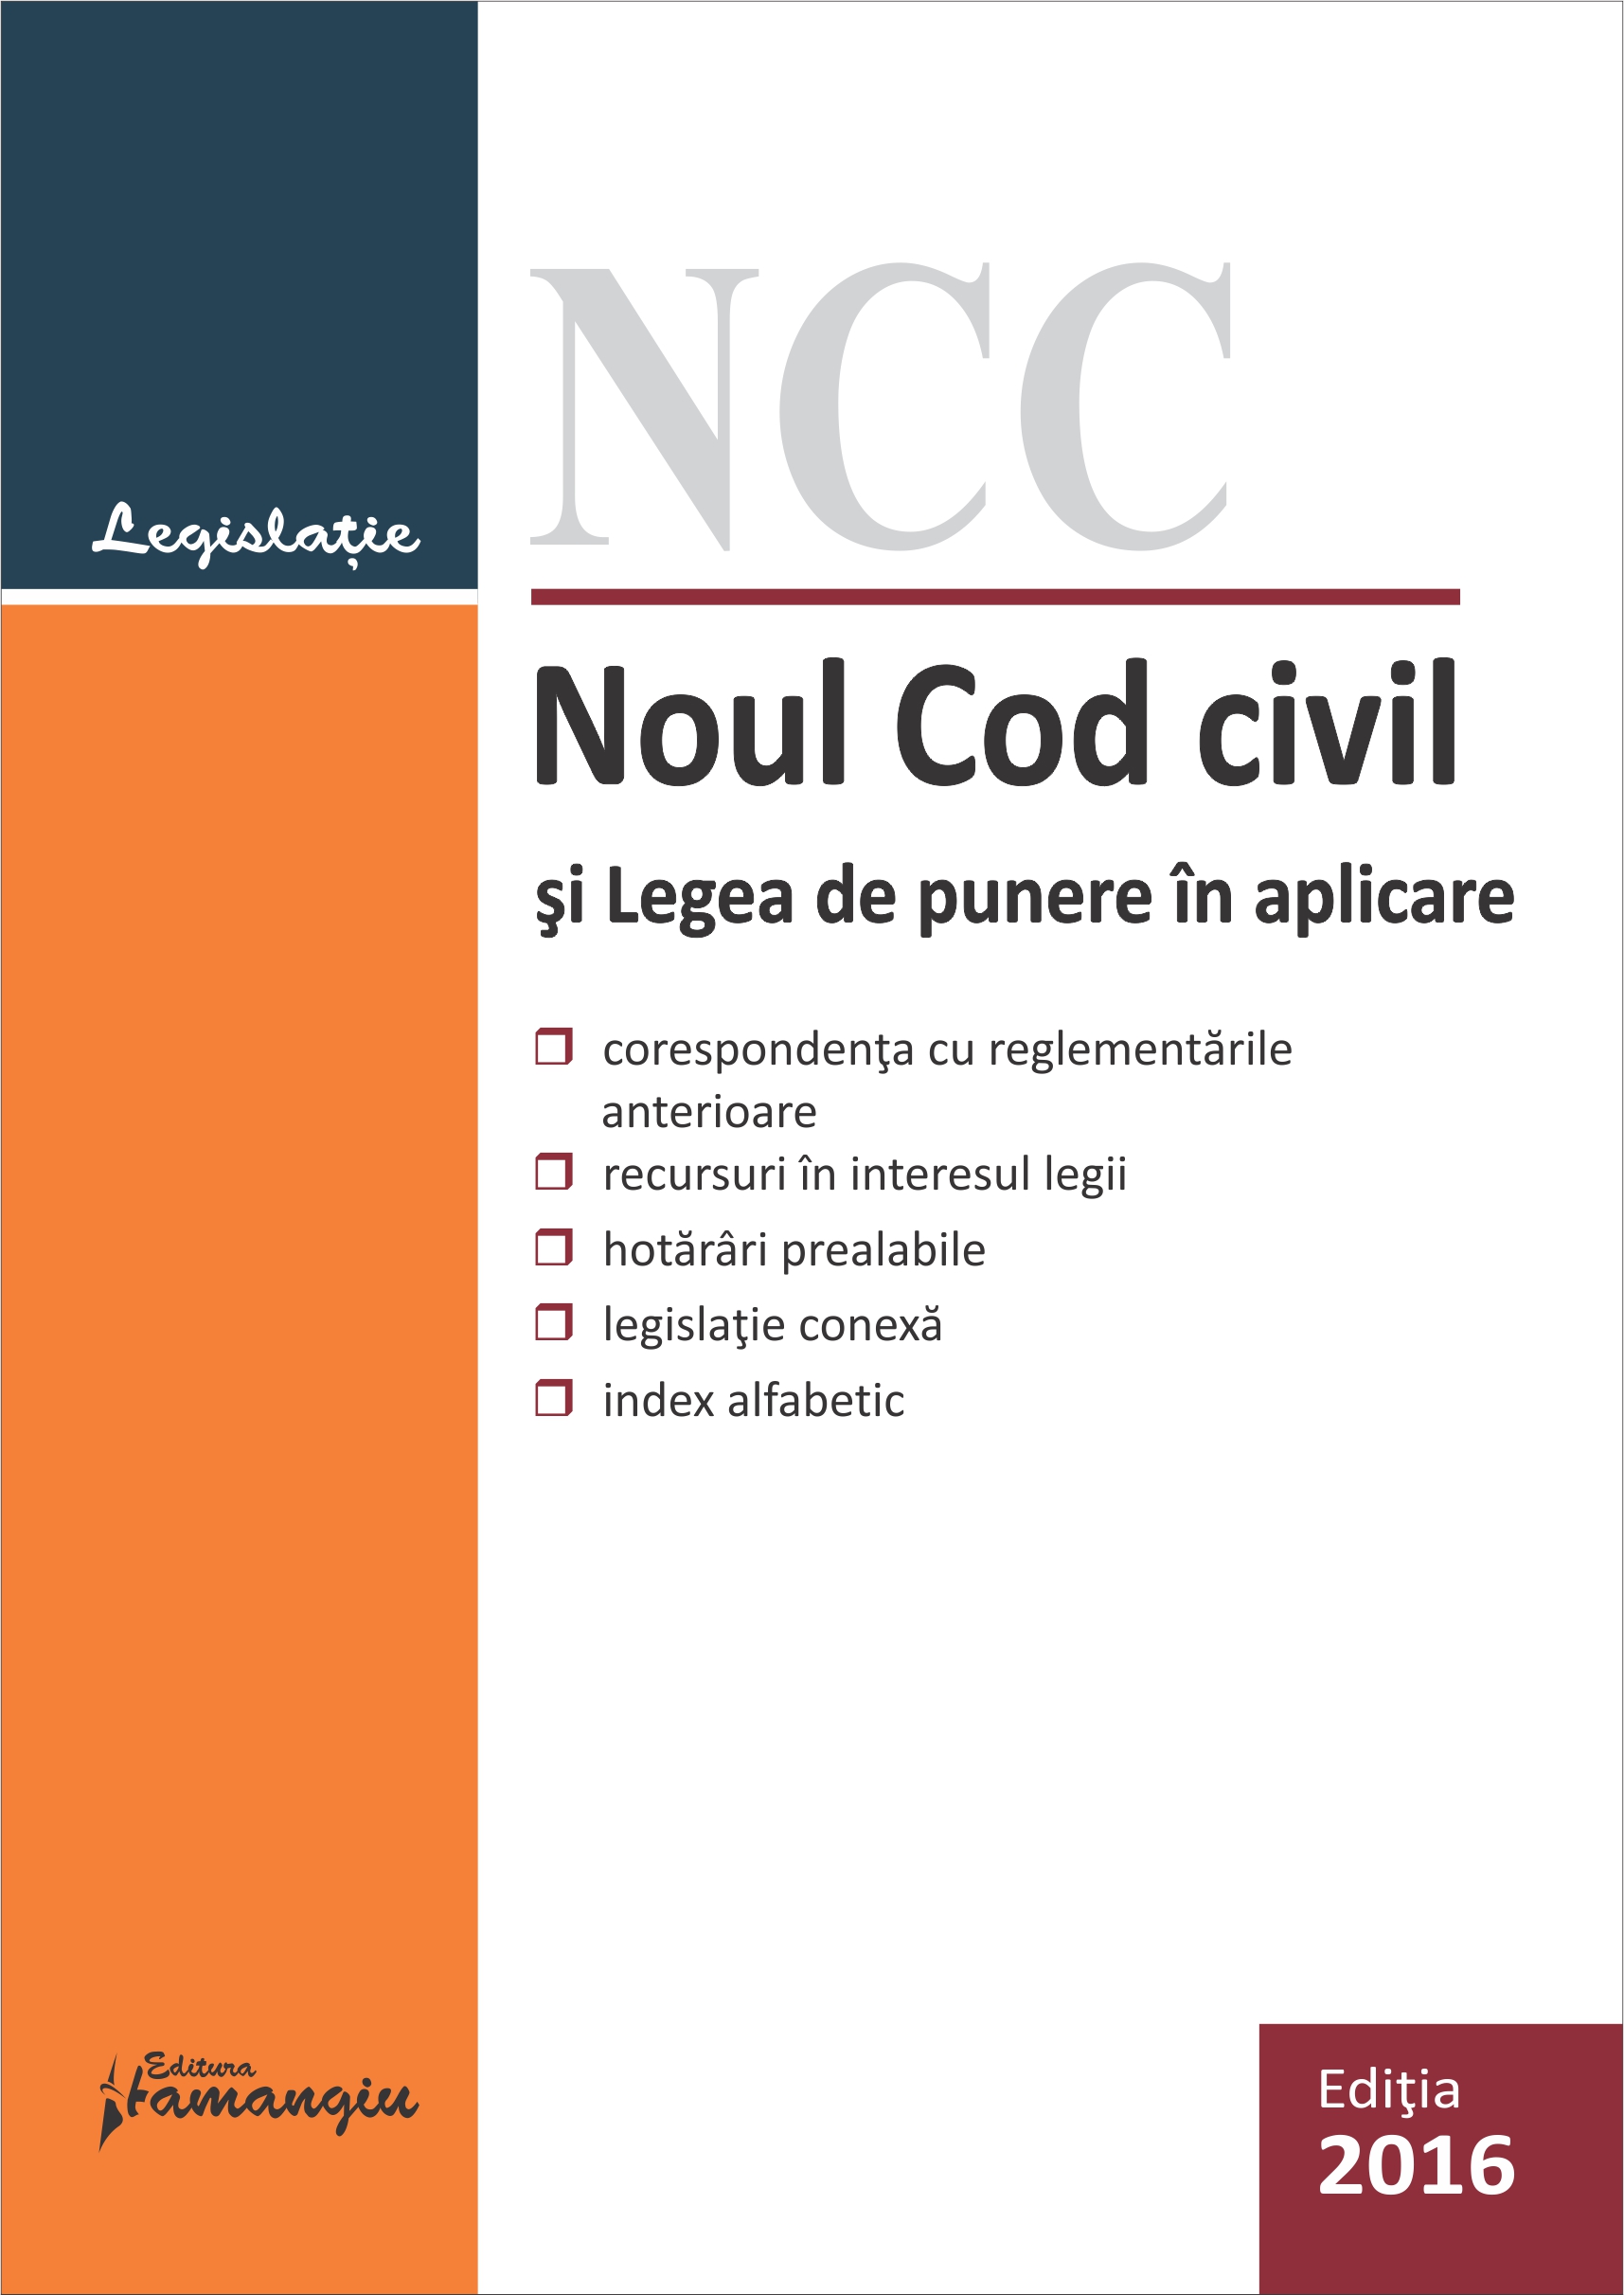 Noul Cod civil si Legea de punere in aplicare act. 05 ianuarie 2016